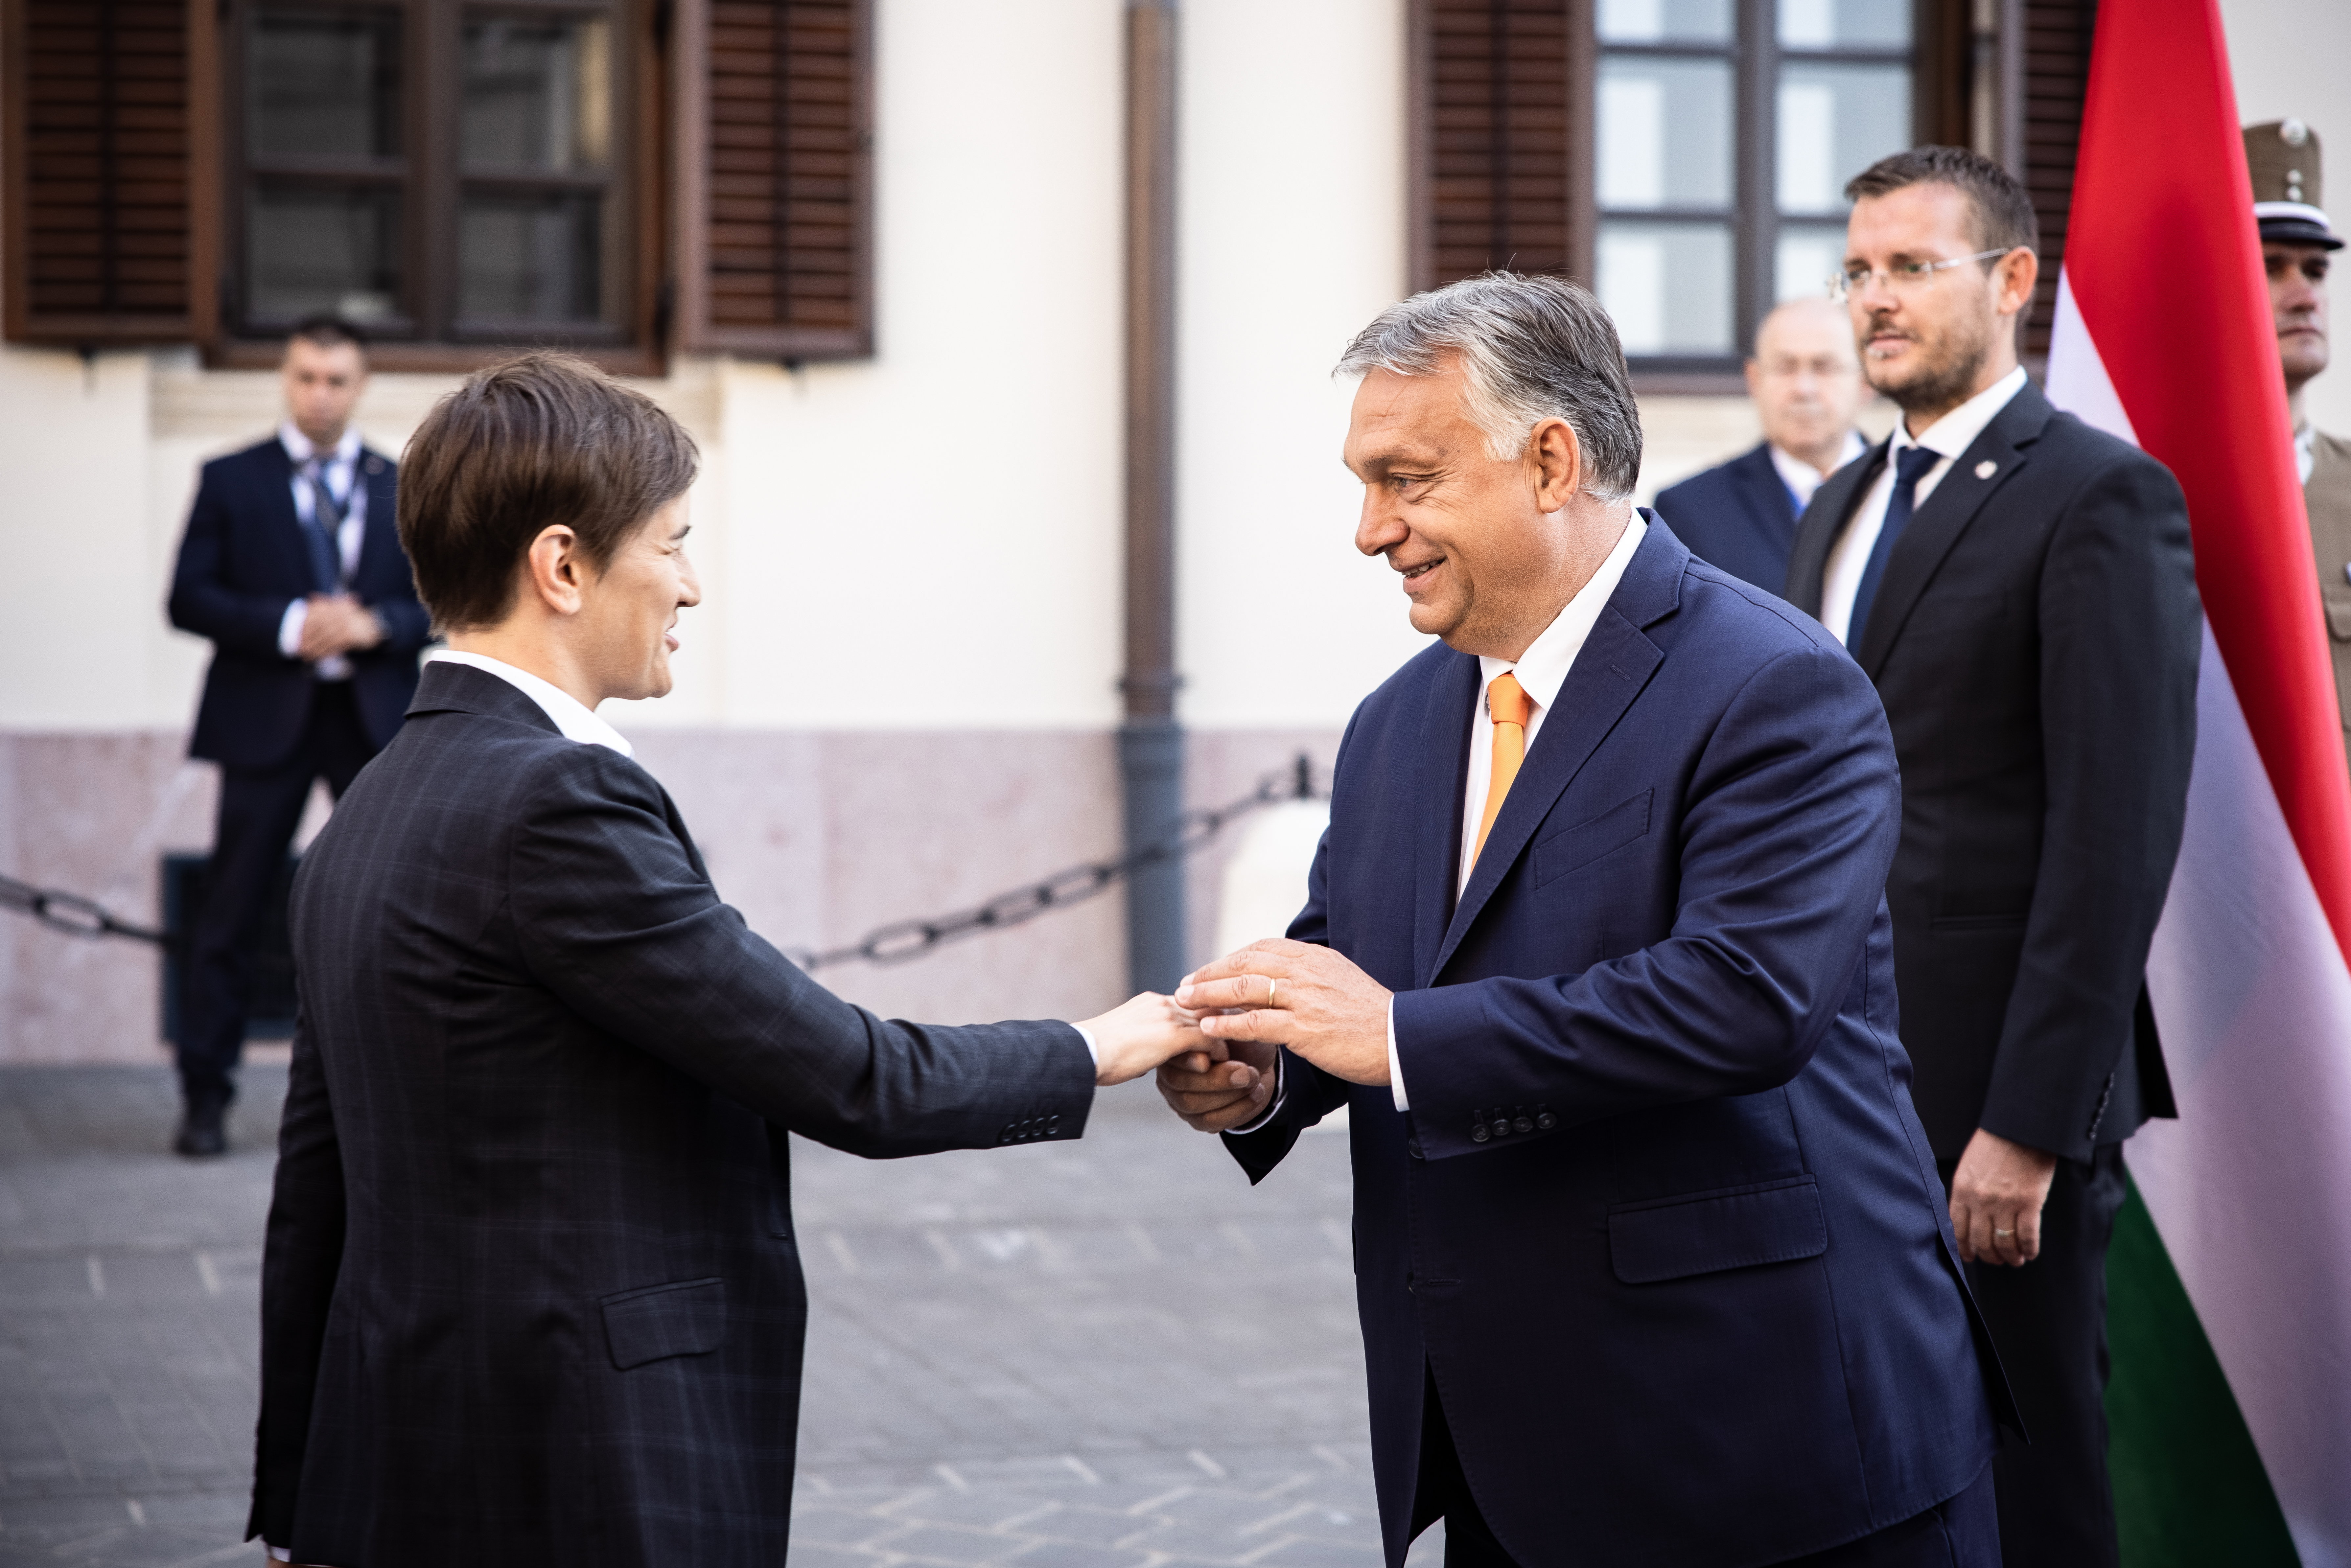 Orbán lett a szimbolikus vezetője egy másik Európának – mondja egy brit történész